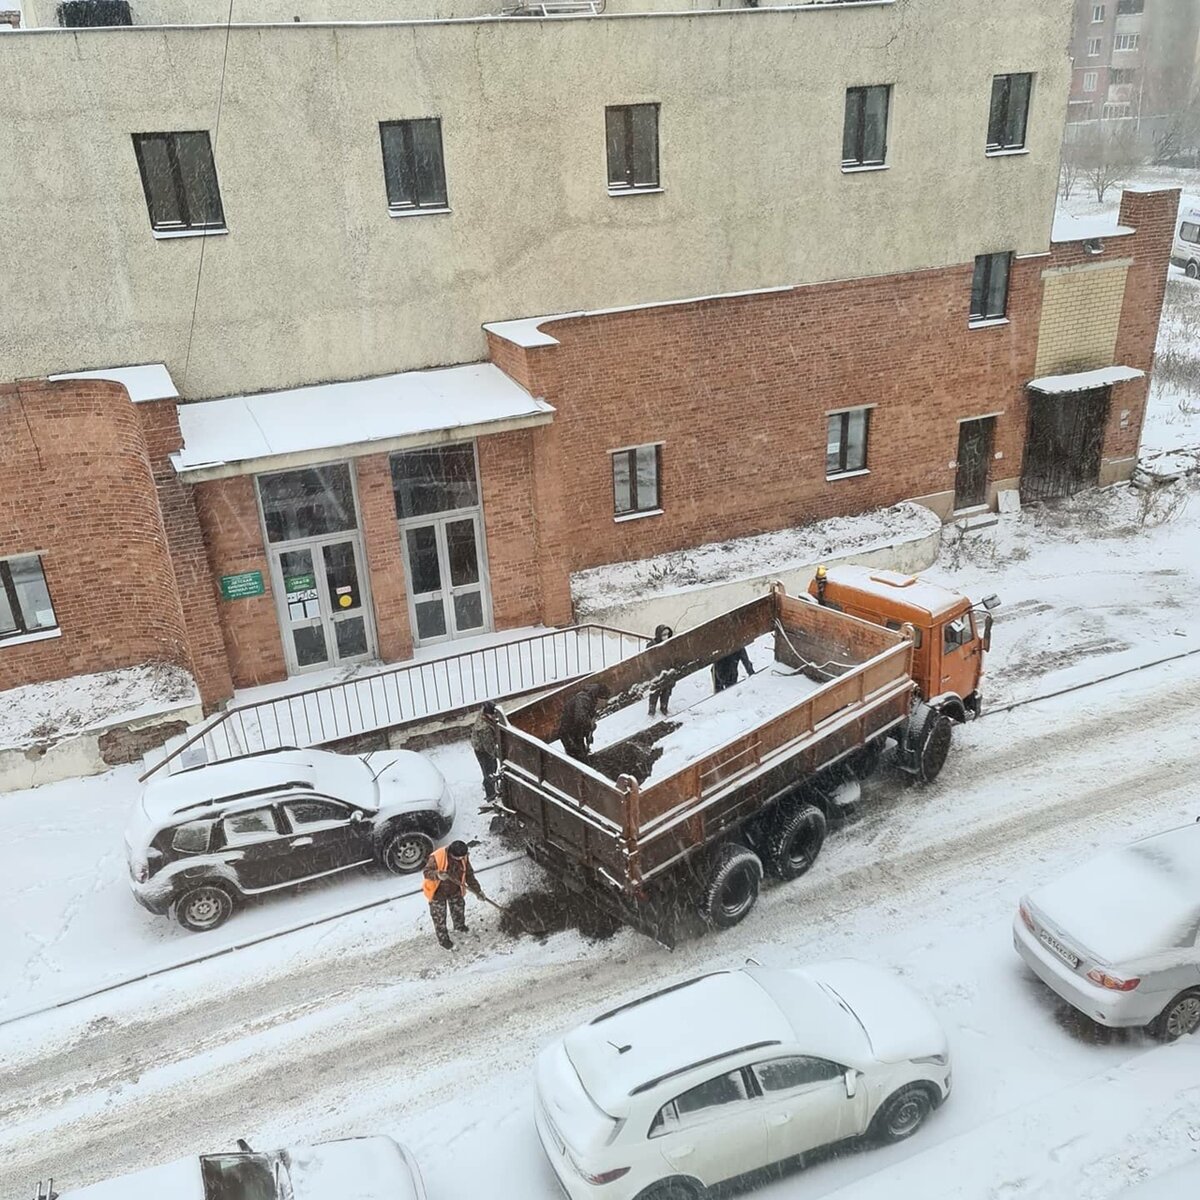 Россия без прикрас. Во Владивостоке бомжа не пустили погретьс в храм, он замёрз! Асфальт в снегу - дорожная традиция